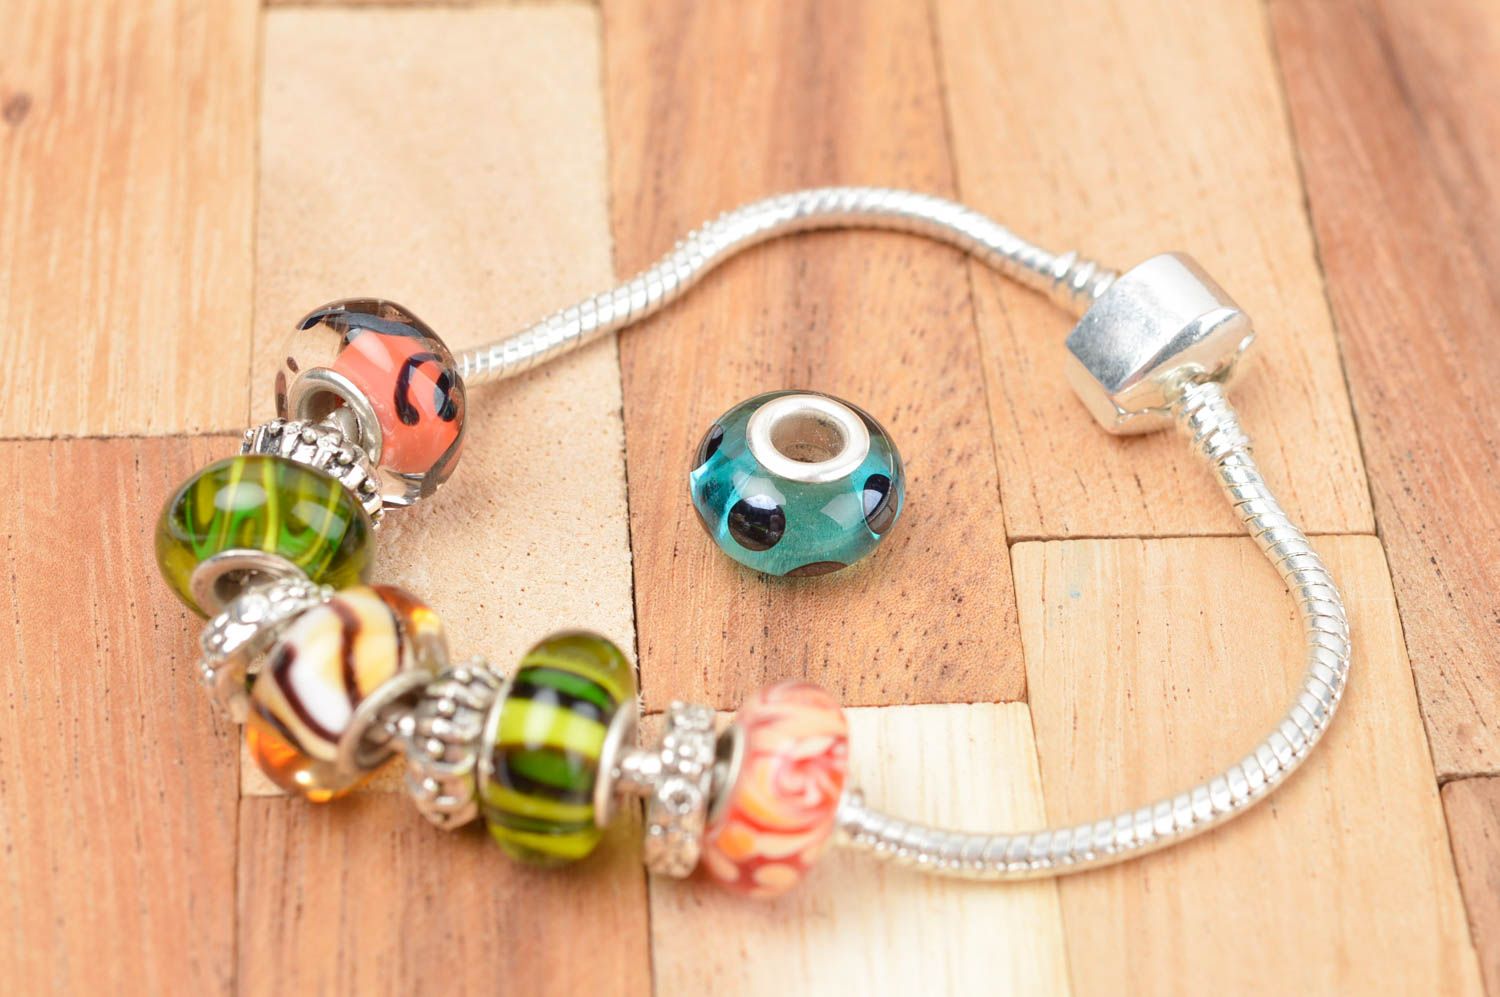 Stylish handmade glass bead lampwork glass beads jewelry making ideas gift ideas photo 4